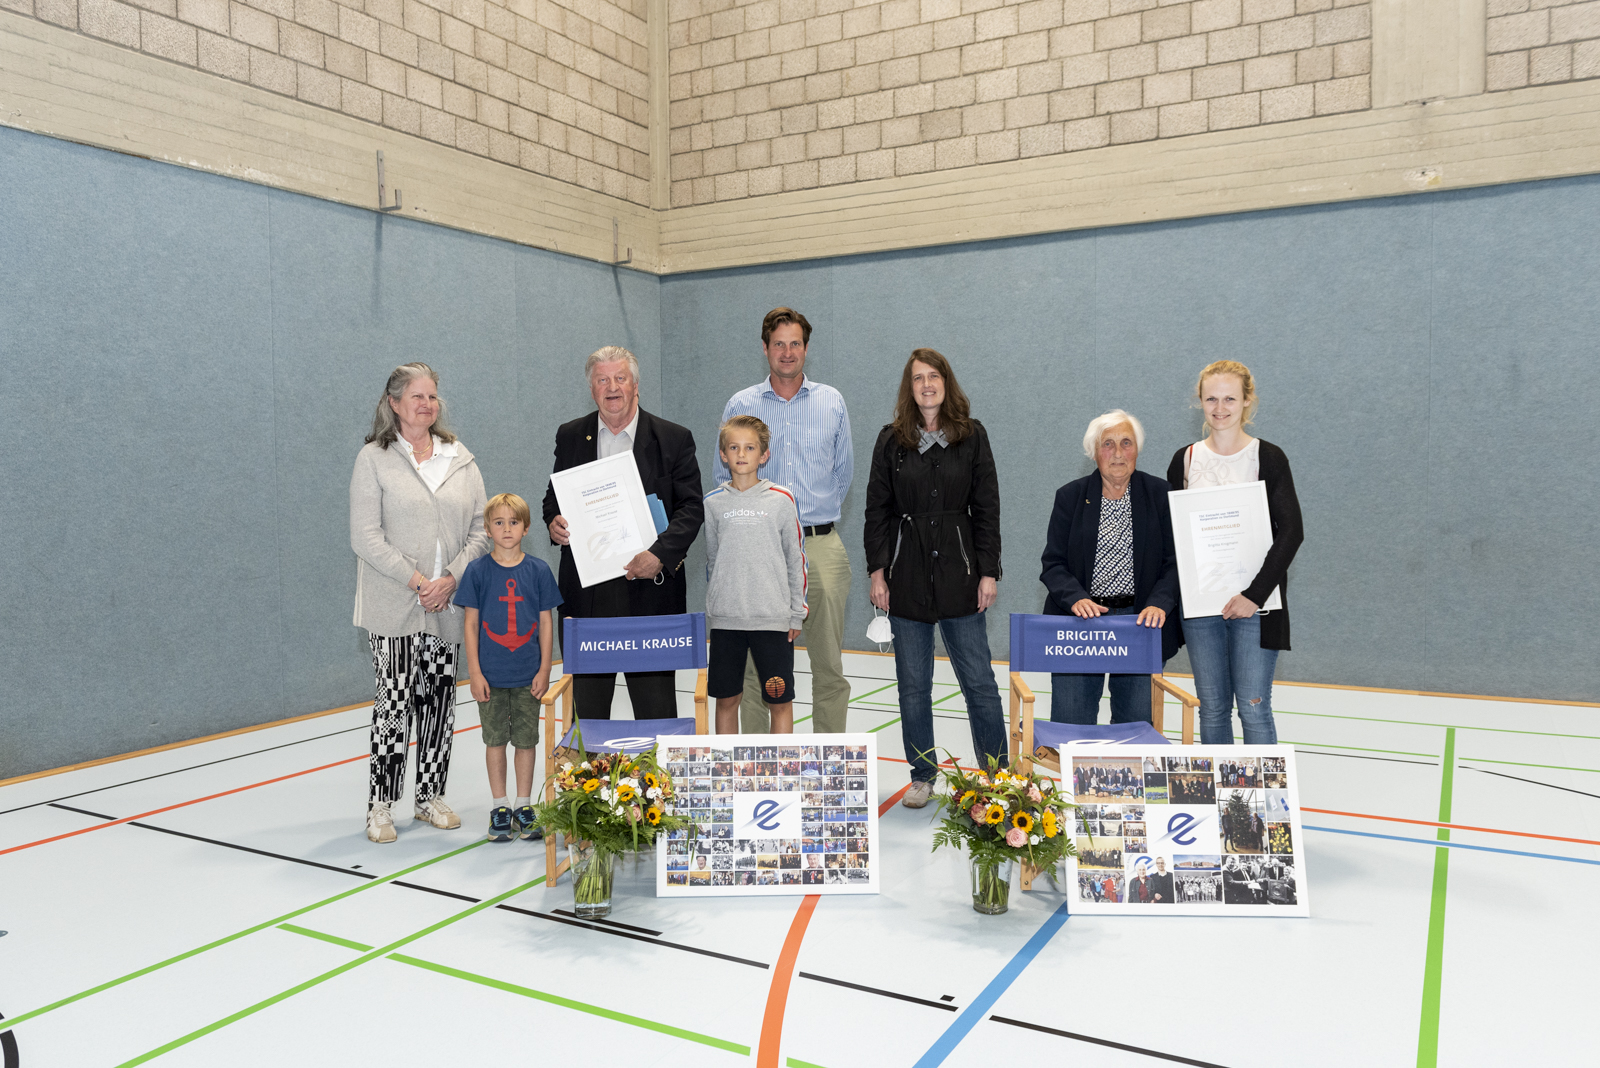 Michael Krause und Brigitta Krogmann wurden zu Ehrenmitgliedern des TSC Eintracht Dortmund benannt. Ihre Familienmitglieder kamen zur Delegiertenversammlung. Foto: Jan Weckelmann